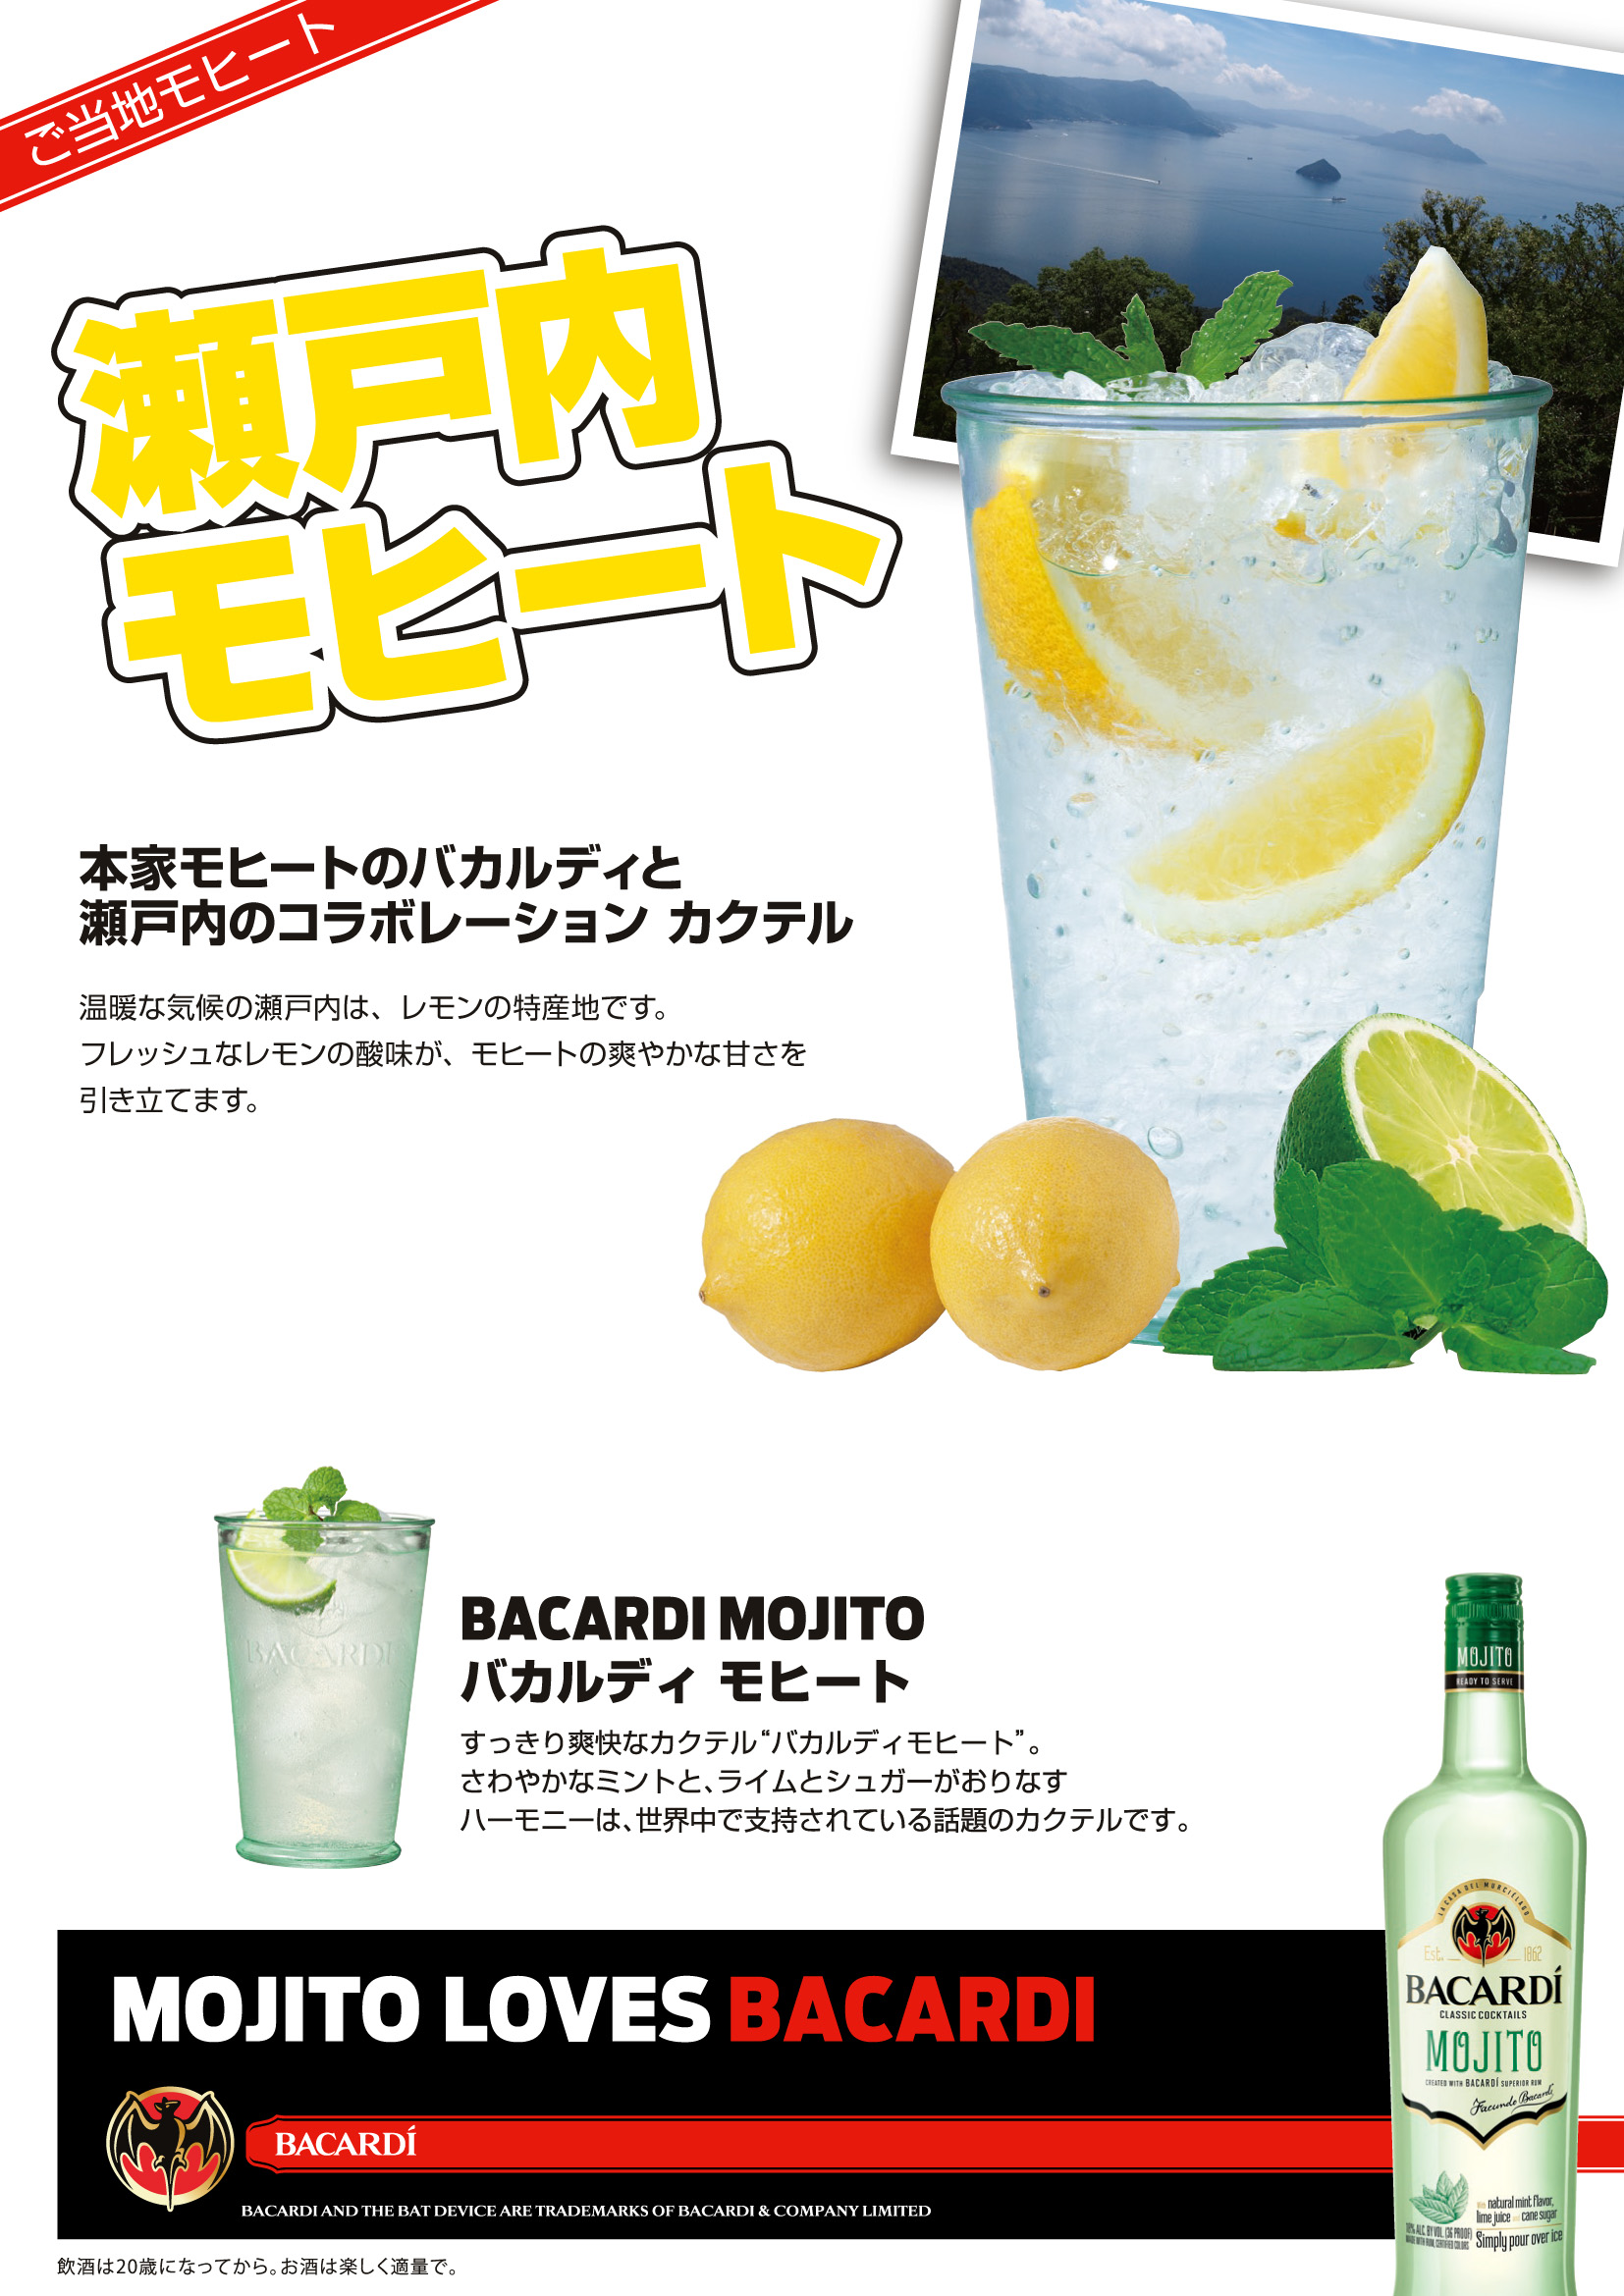 レモンを使用したカクテル 瀬戸内モヒート を展開 ニュースリリース サッポロビール